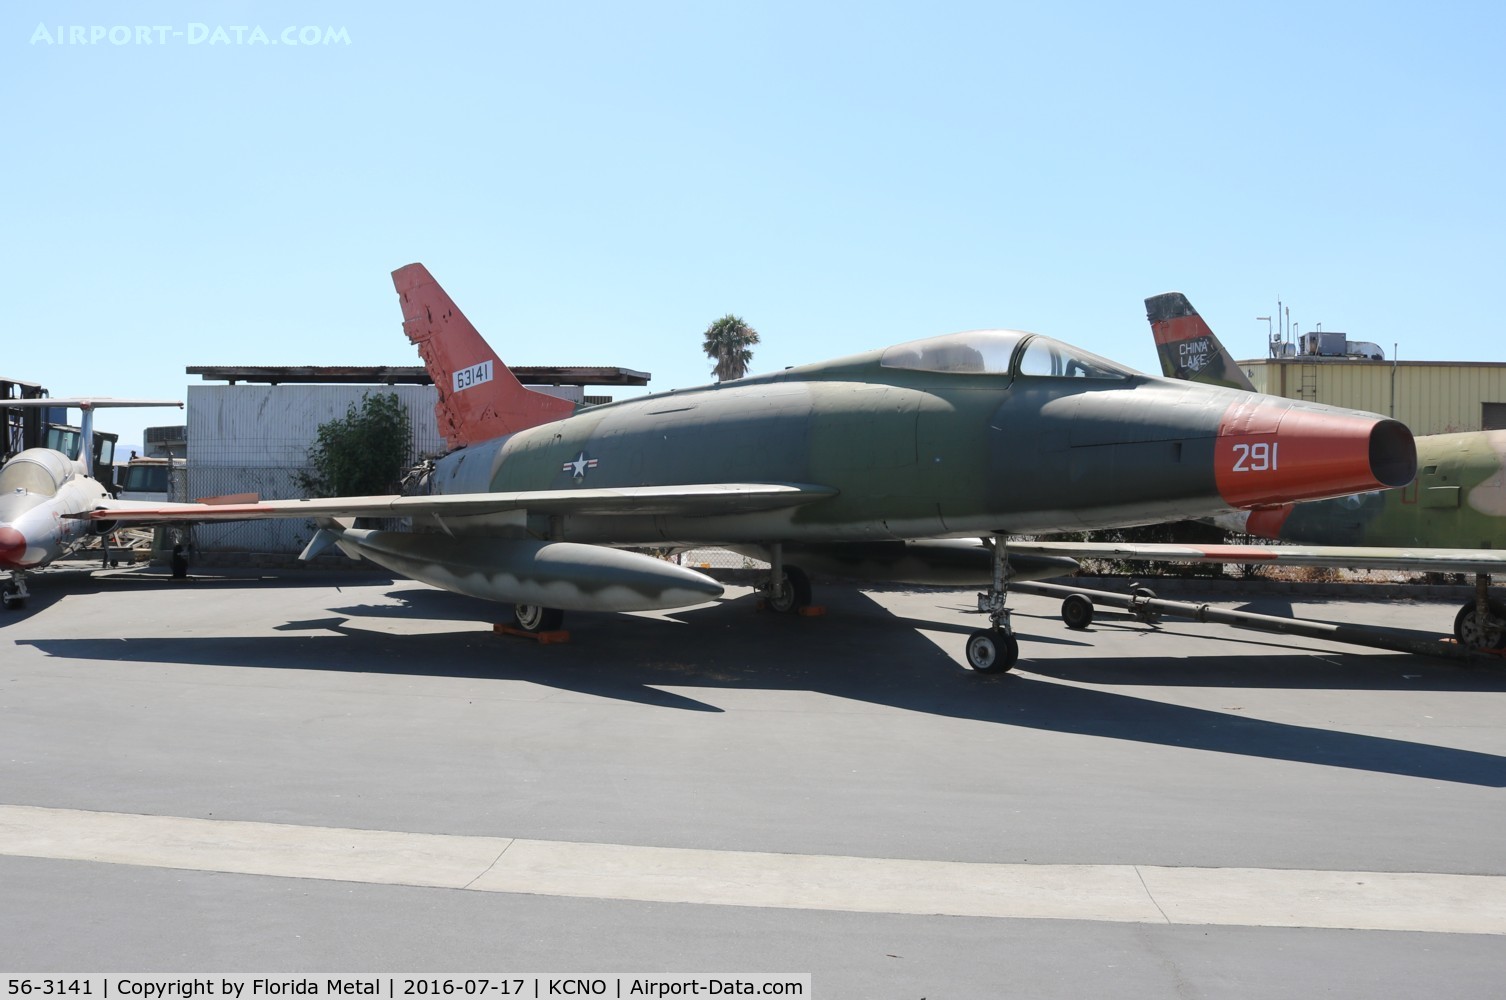 56-3141, 1956 North American F-100D Super Sabre C/N 235-239, F-100D